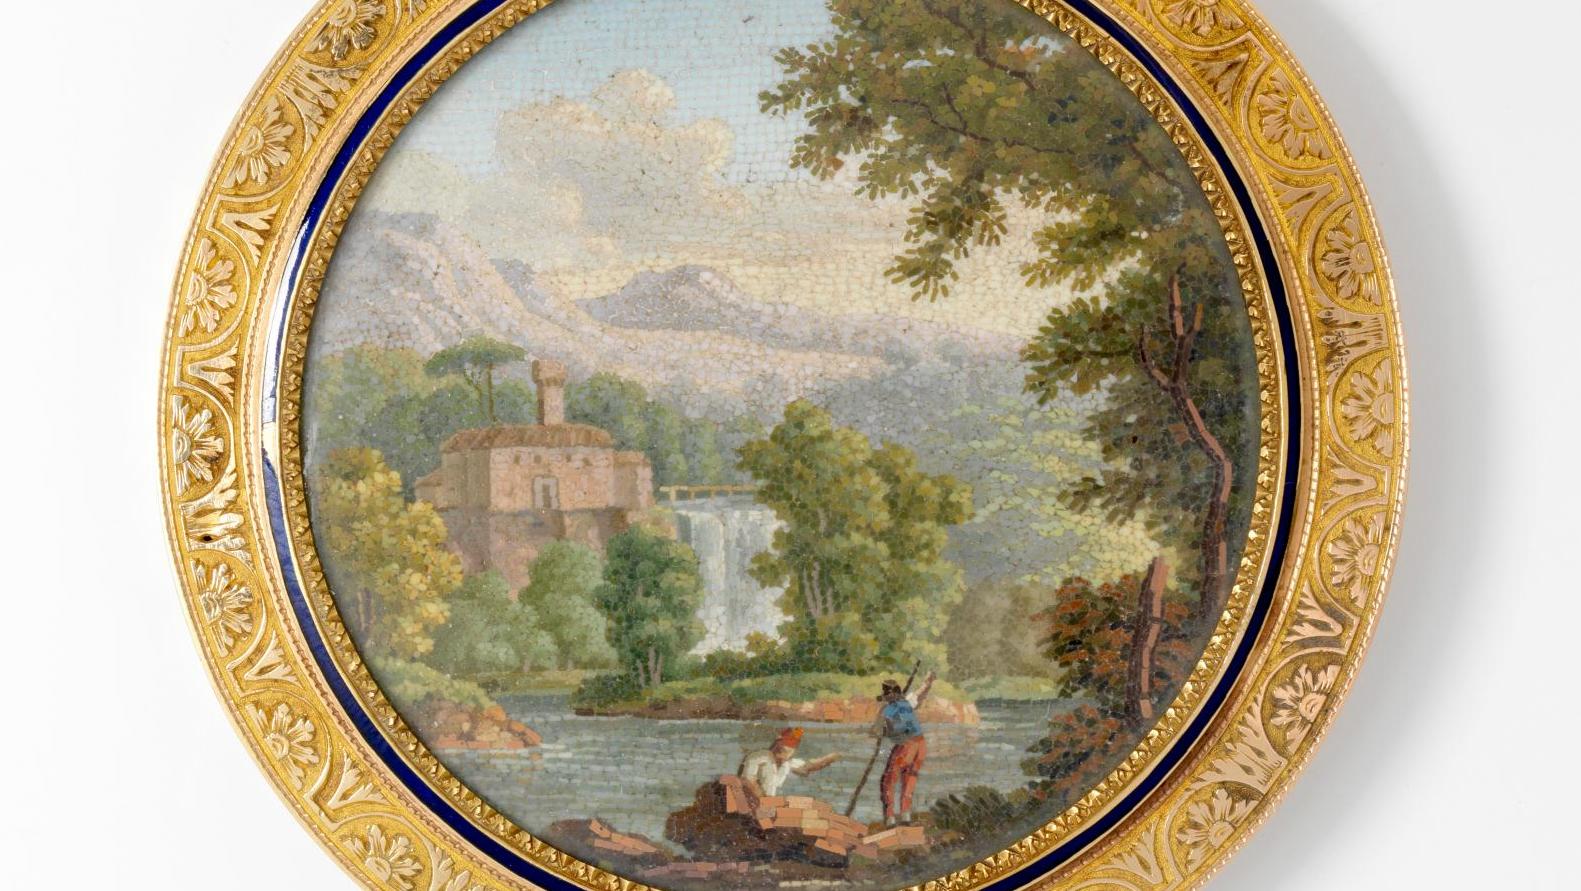 Boîte ronde en or guilloché, micromosaïque et émail, orfèvre Léger-Fortuné-Alexandre... Du grand art en miniature